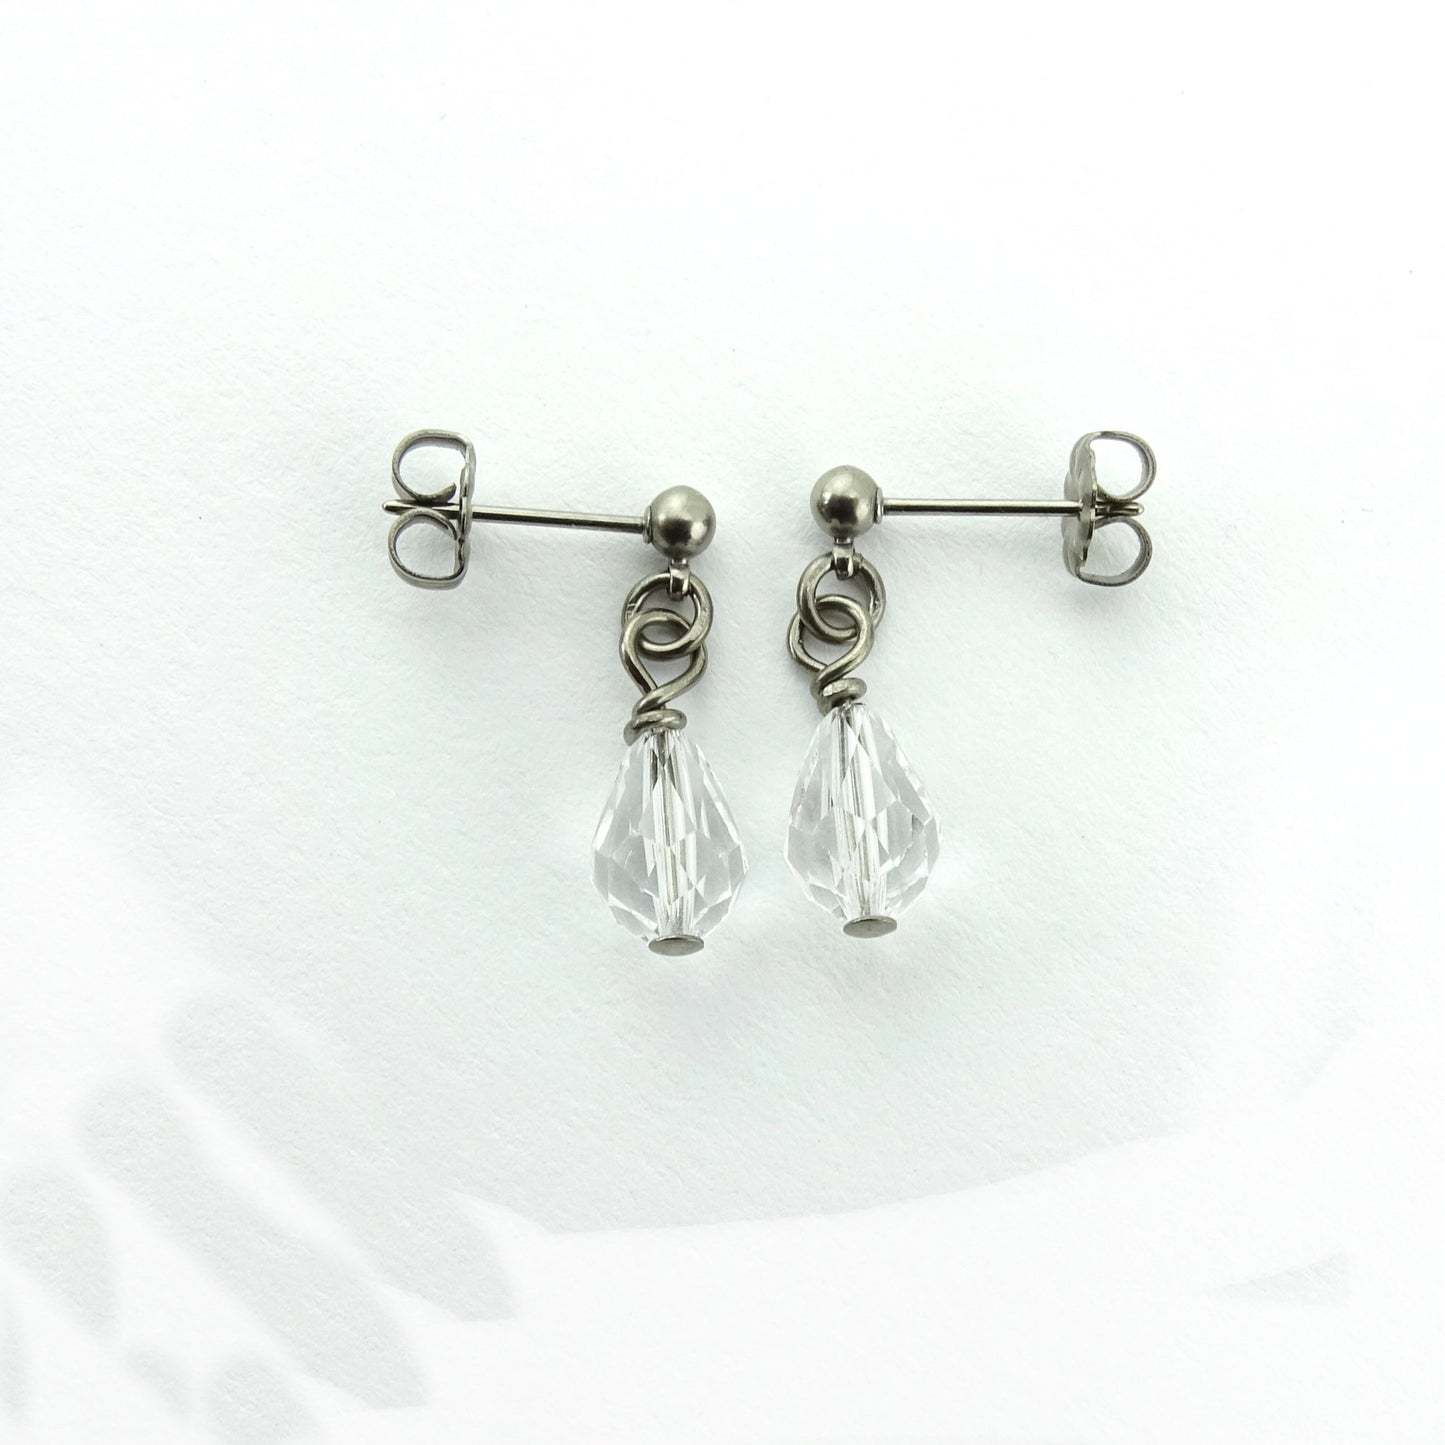 Clear Crystal Drop Titanium Dangle Stud, Swarovski Crystal Teardrop Earrings, Hypoallergenic Nickel Free Titanium Sensitive Ears Earrings